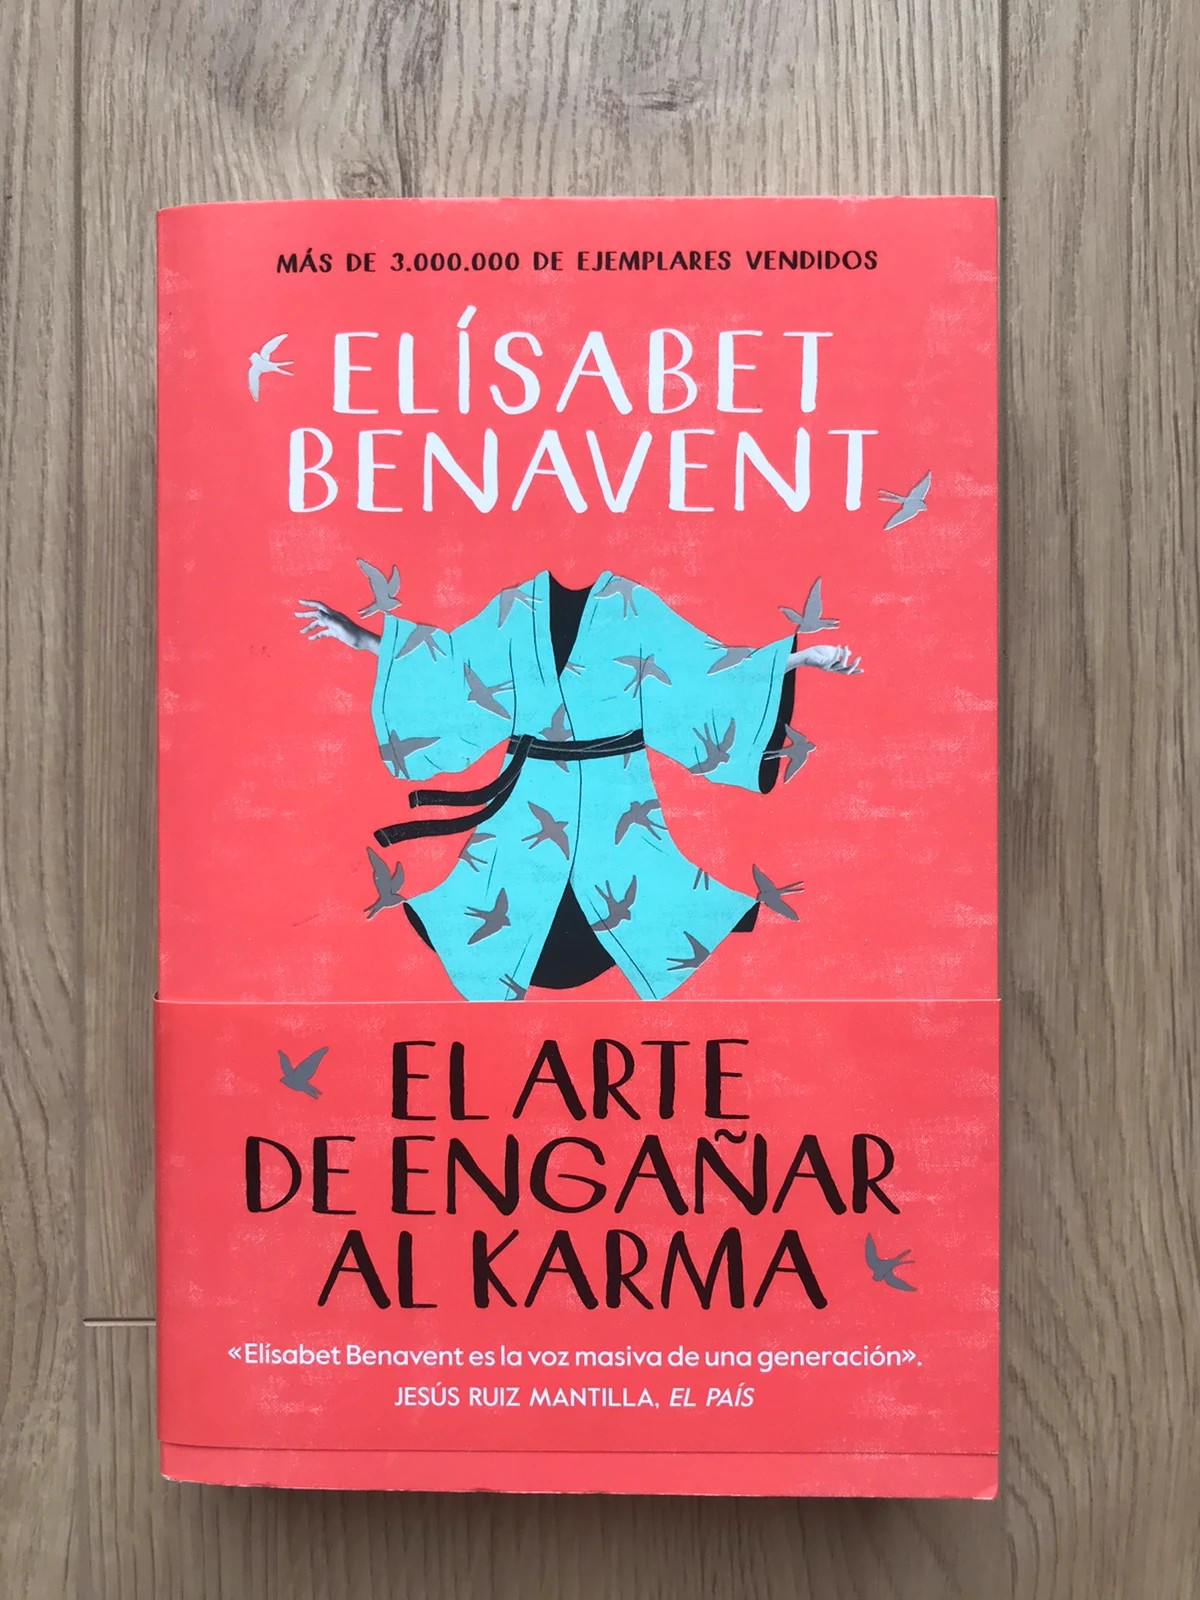 El arte de engañar al karma. Elisabet Benavent d'occasion pour 10 EUR in  Barcelona sur WALLAPOP